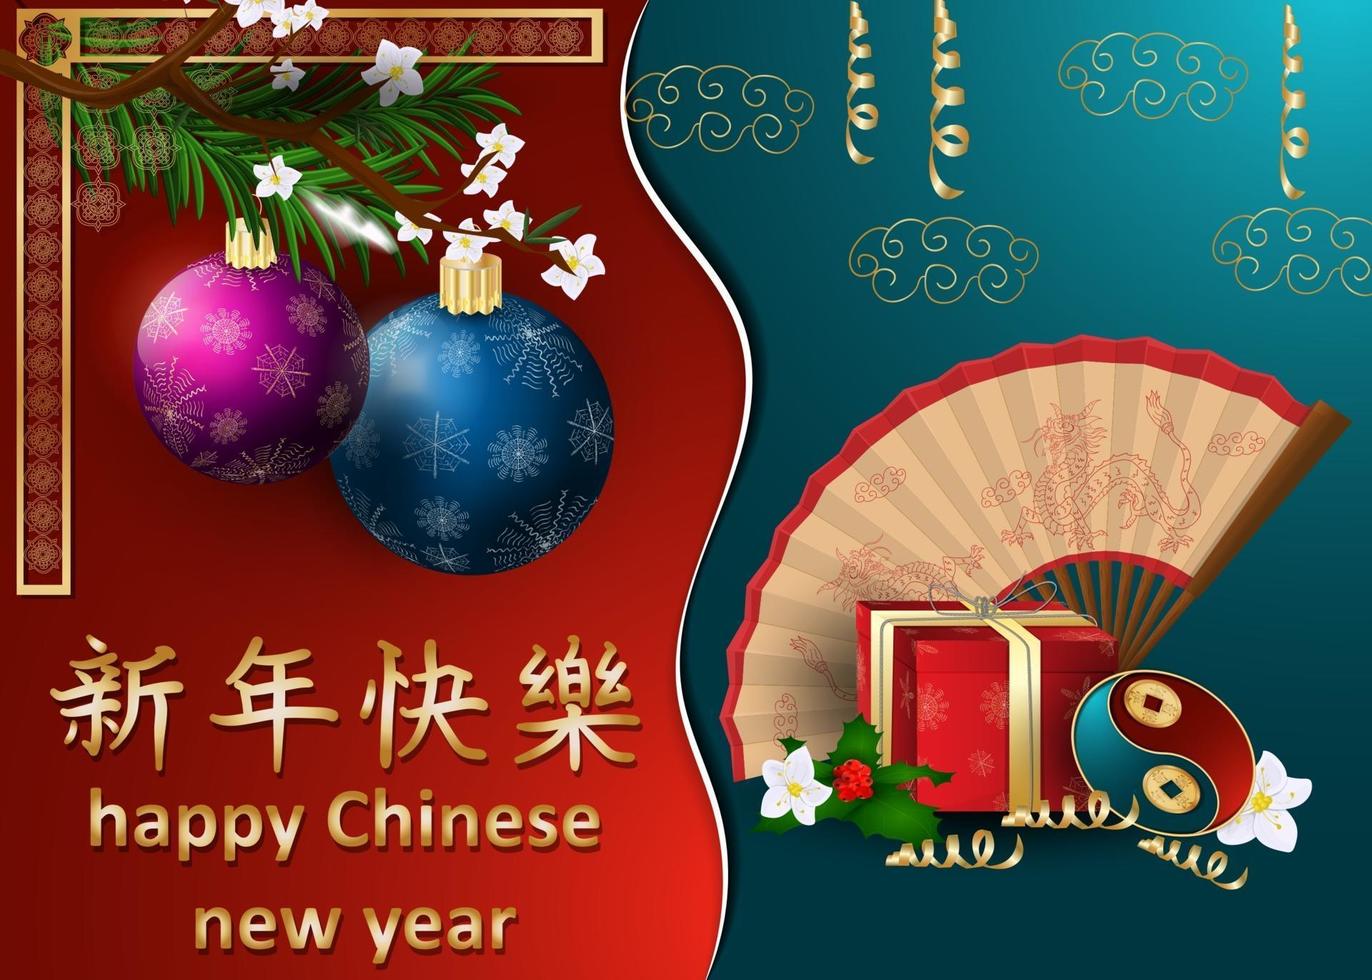 conception de cartes de voeux pour le nouvel an chinois et européen vecteur